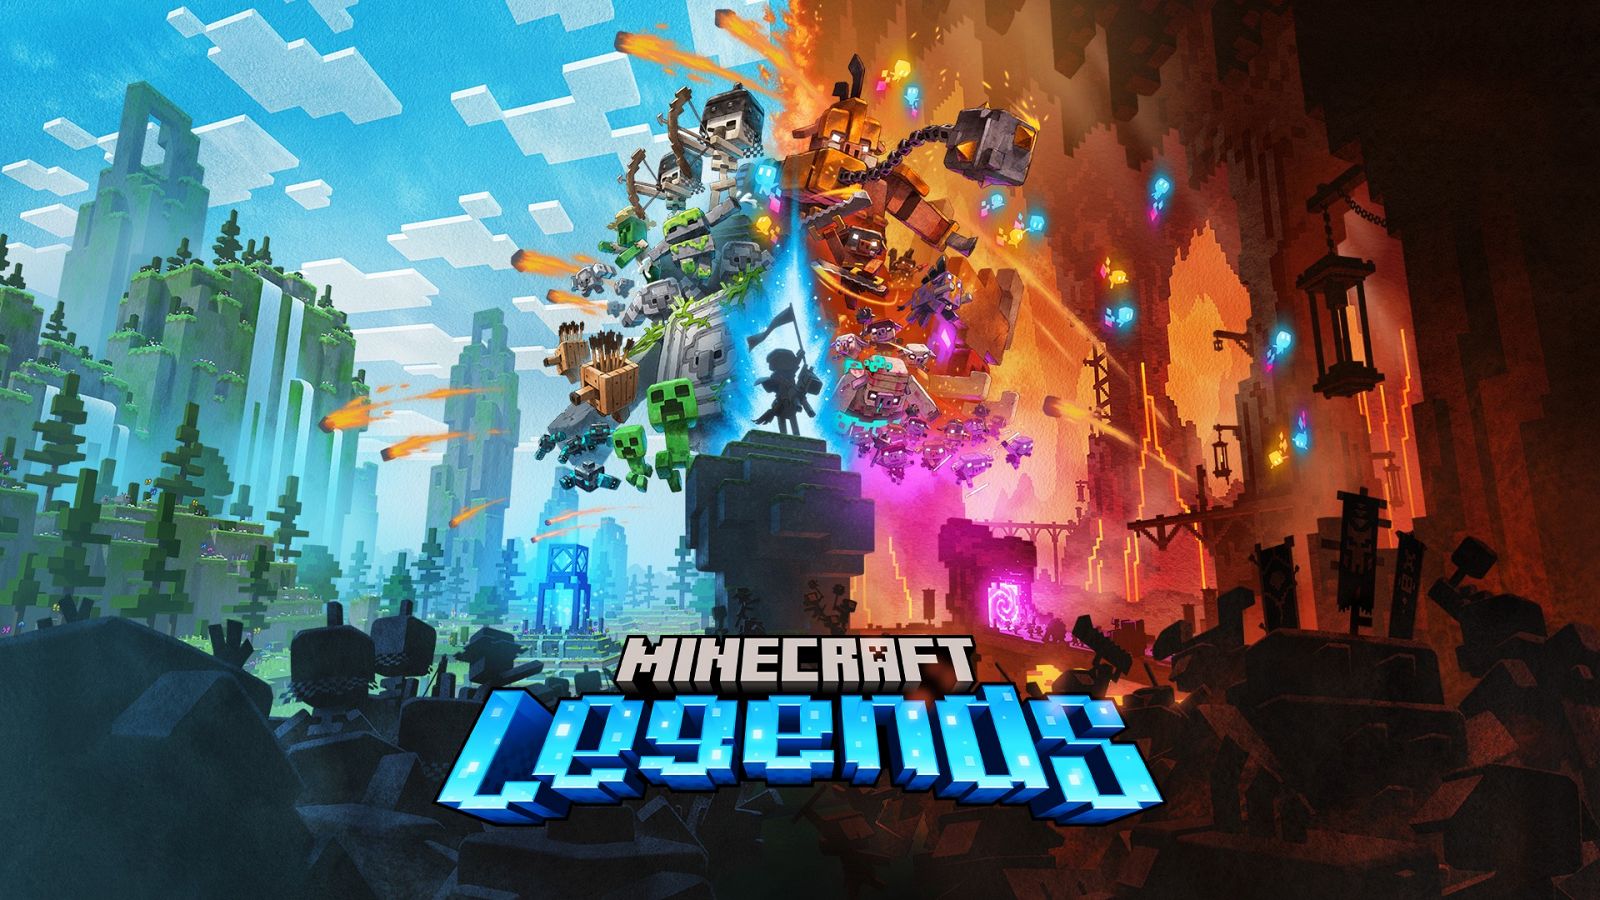 Imagen promocional del videojuego Minecraft Legends